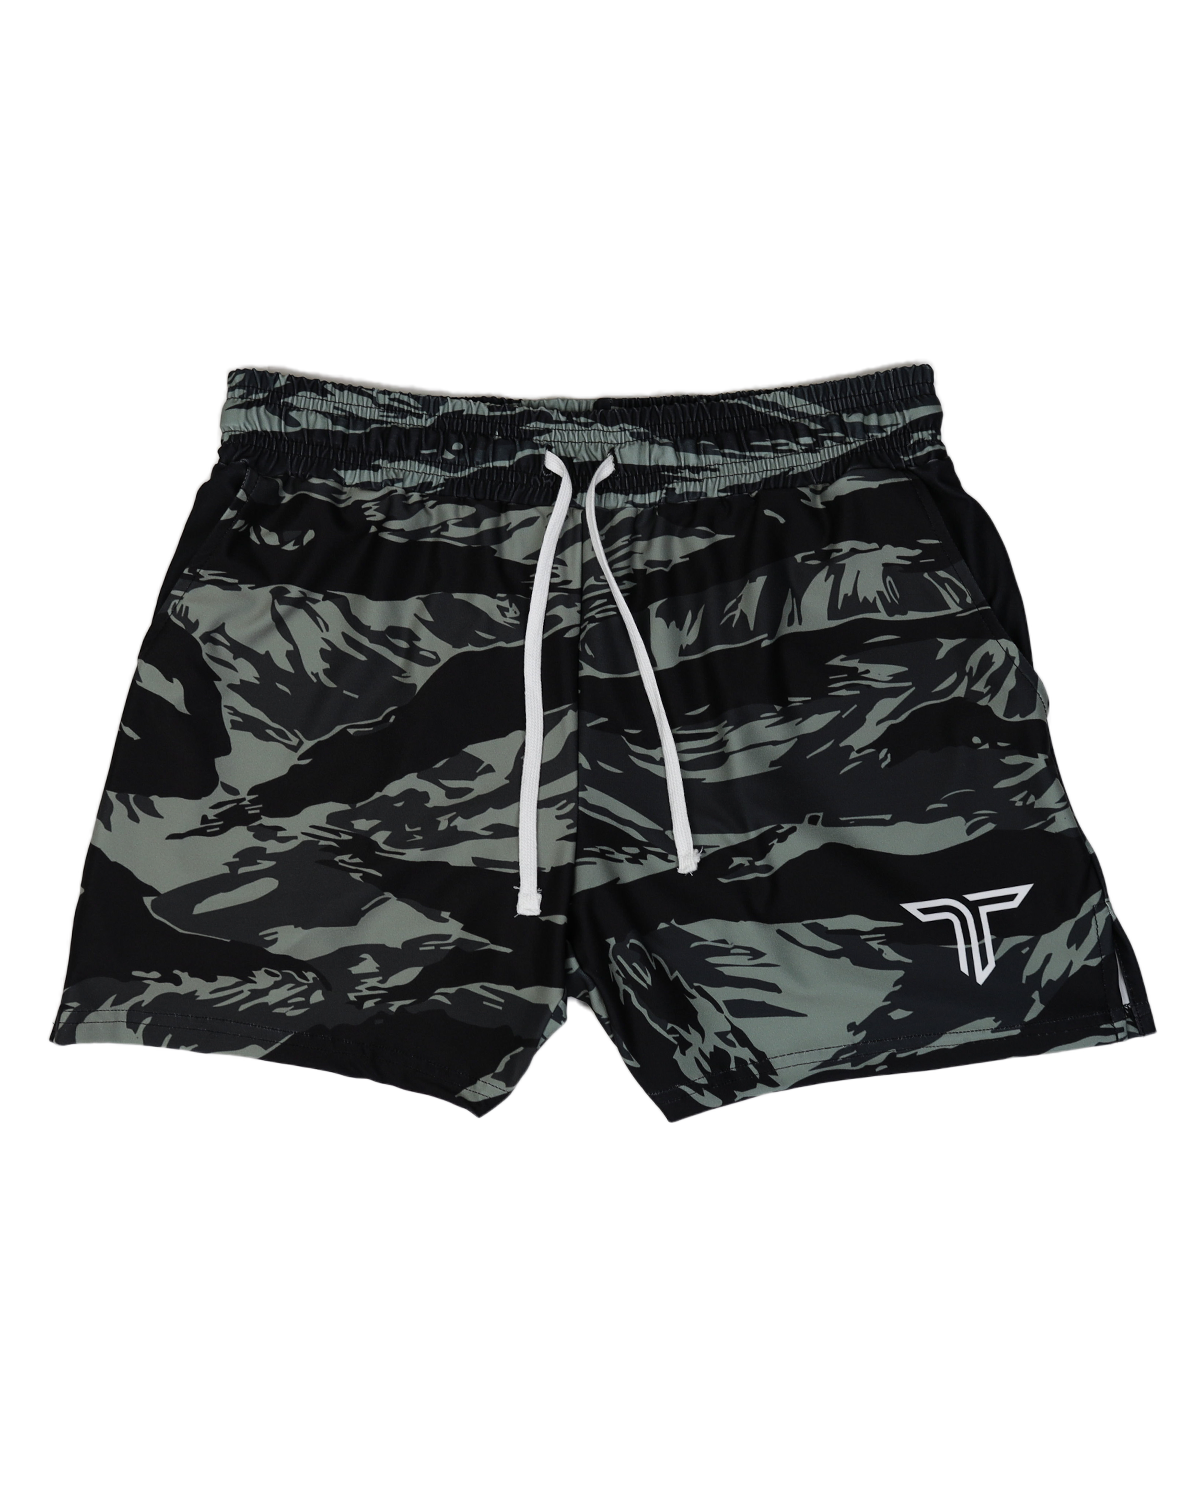 TD-GS-007 360° Custom Gym Shorts (5"&7“ Inseam)